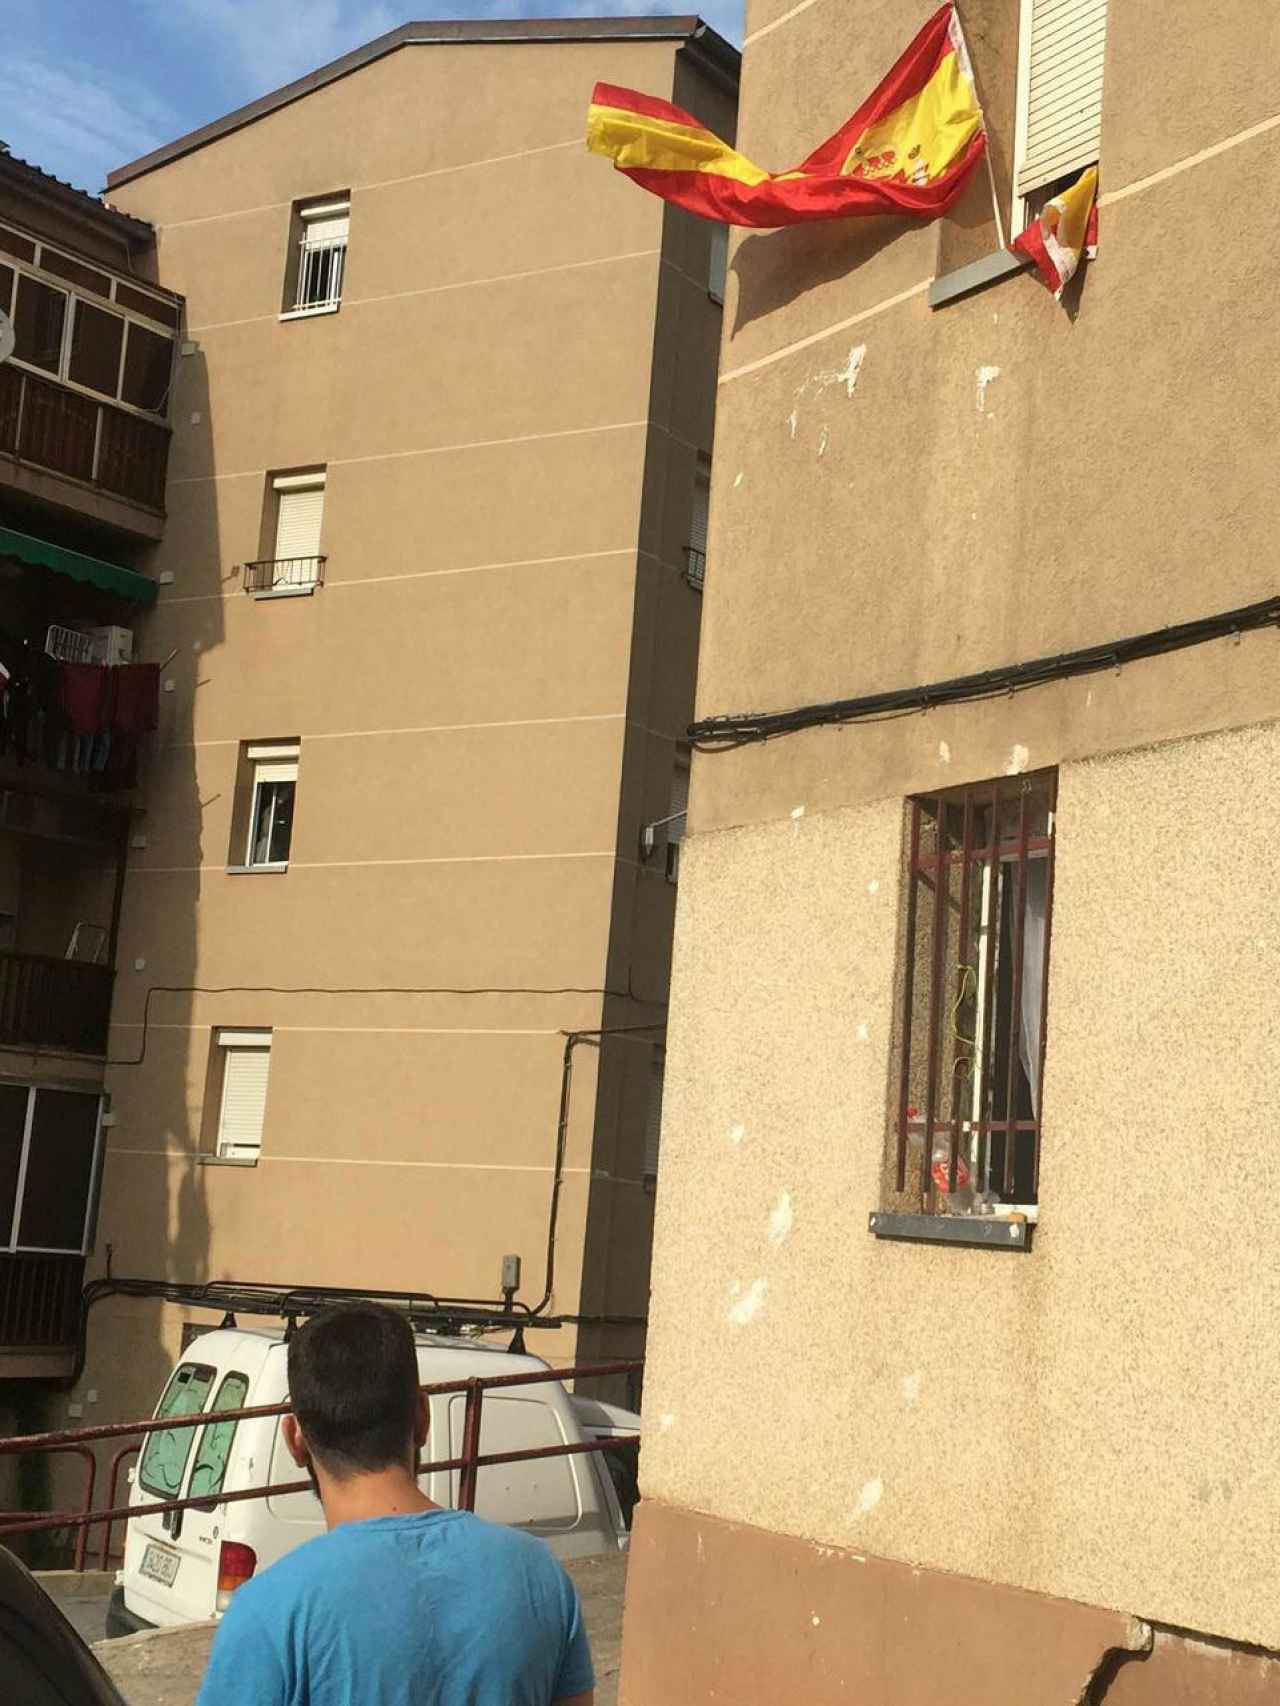 La única bandera que ondea en las ventanas de Vilarroja es la española.